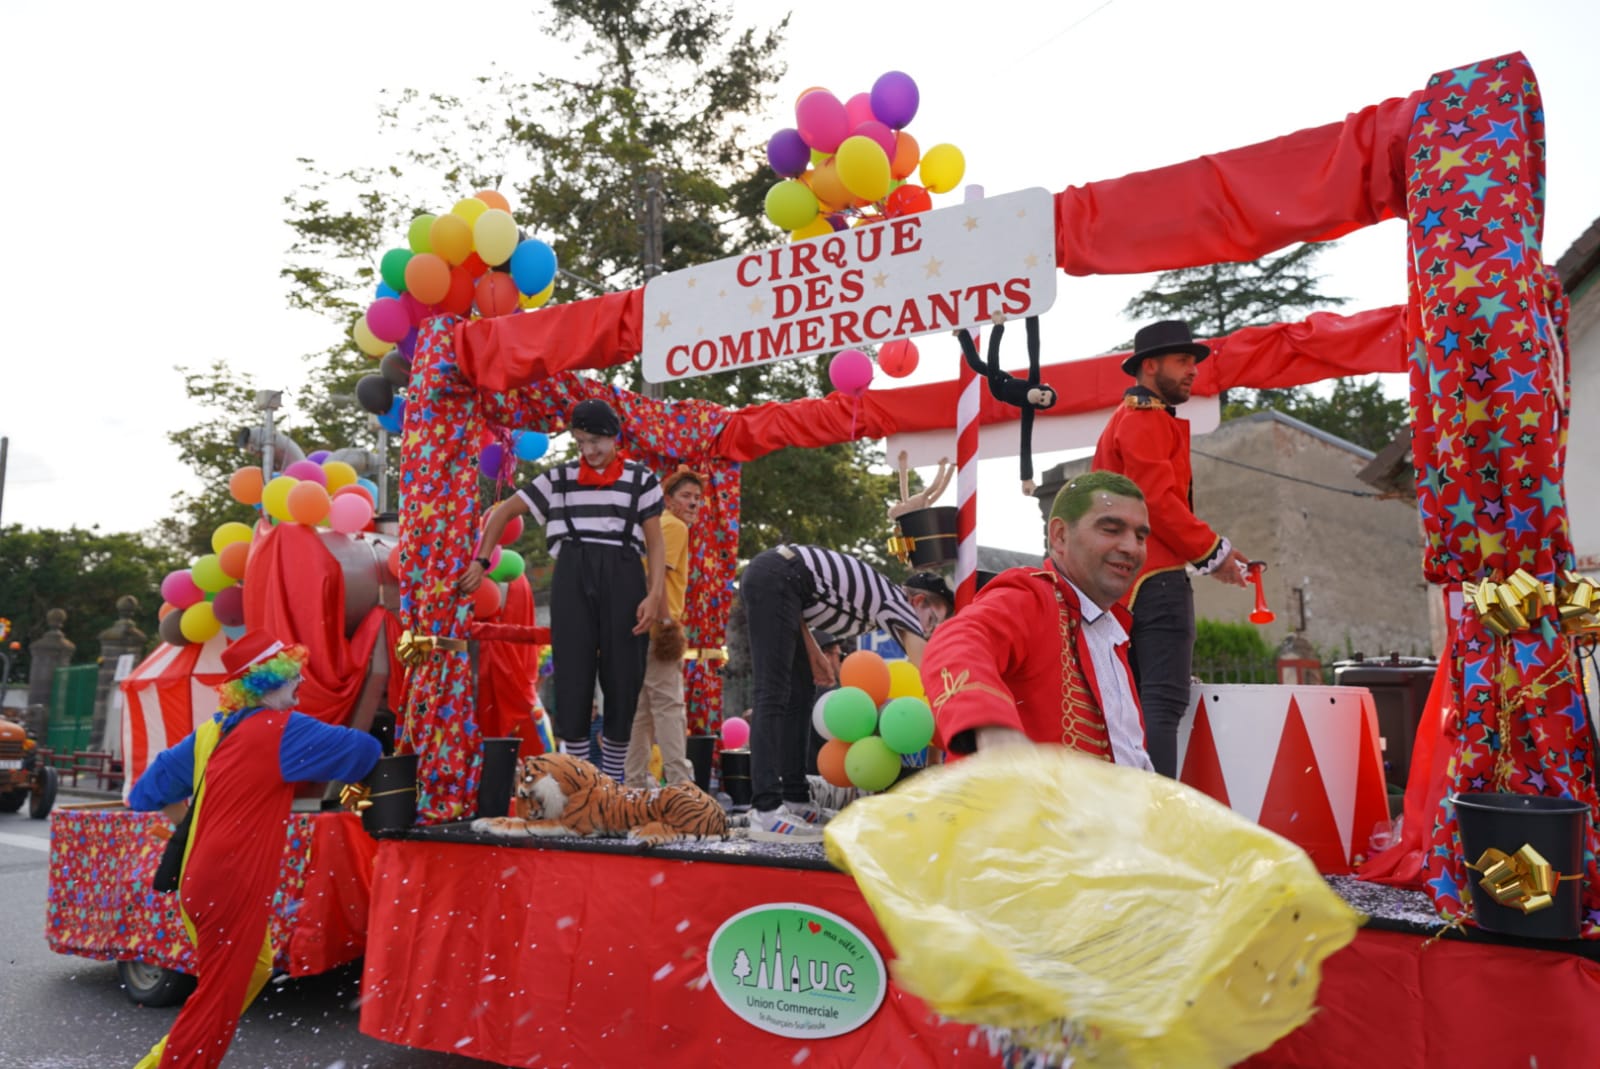 un char nommé "le cirque des commerçants" ; il est rouge, décoré de ballons, de couleurs vives et des figurants déguisés en clowns y font la fête